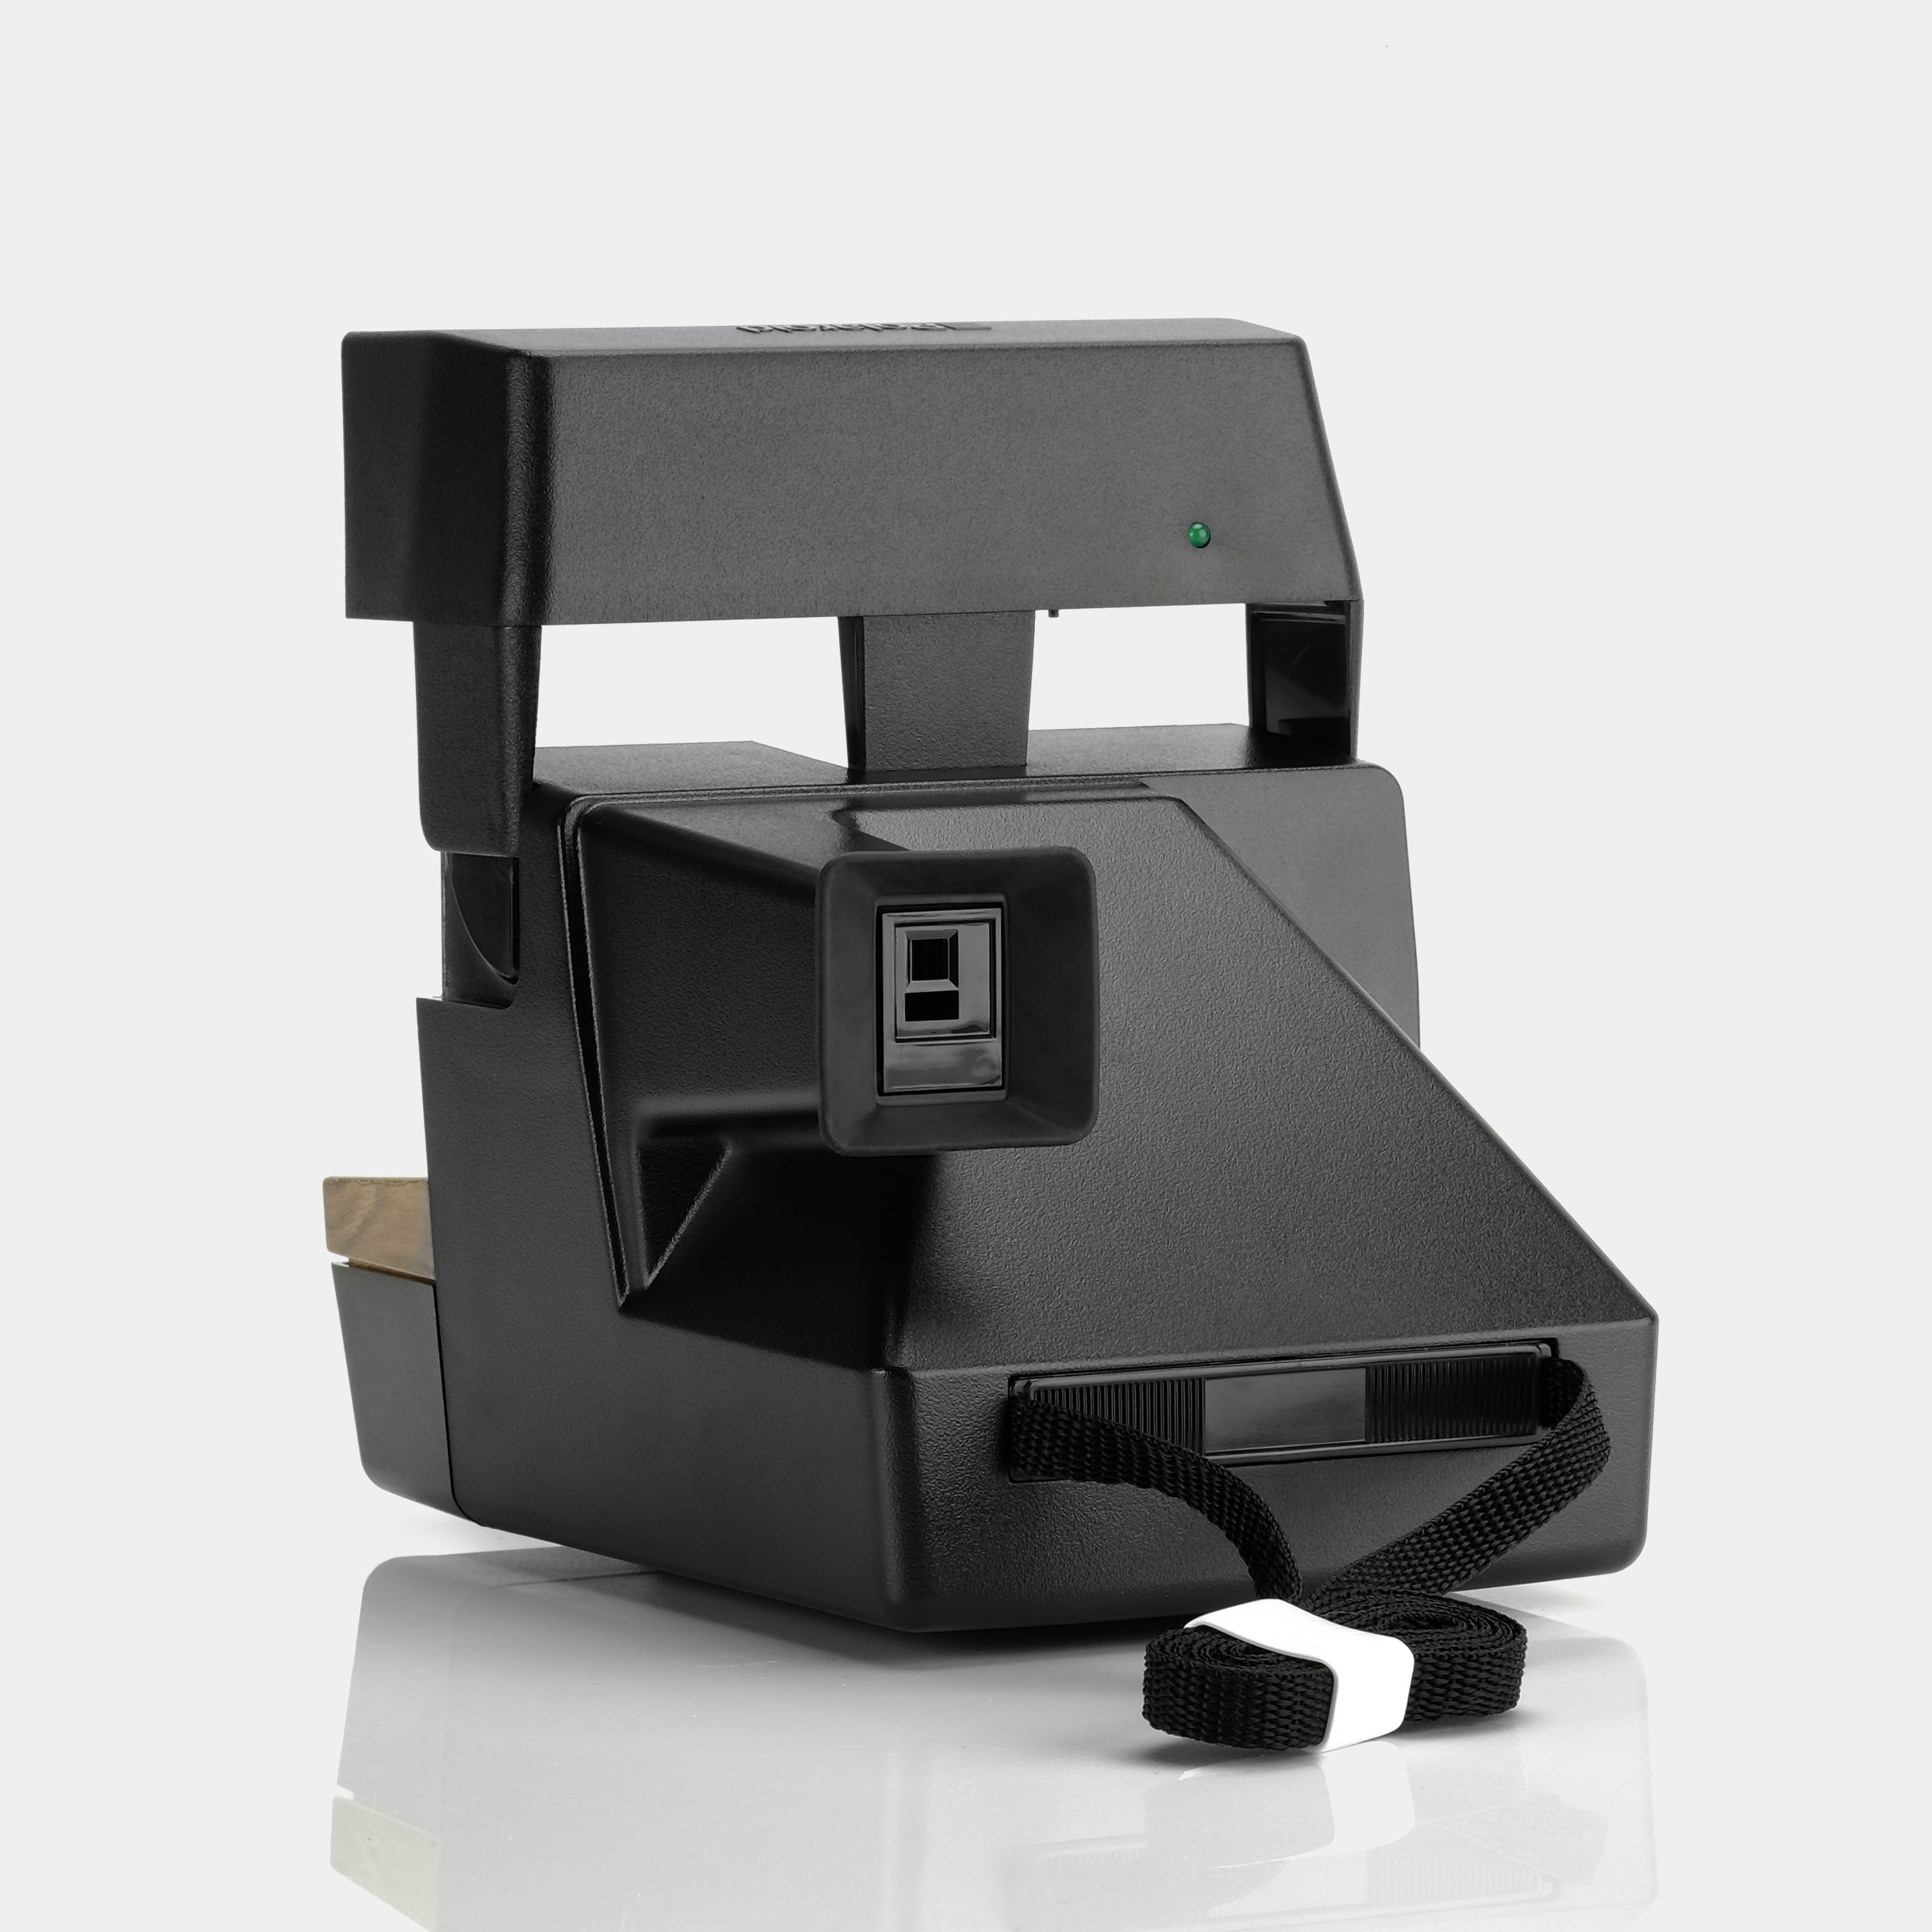 Polaroid 600 Rustic Wood Grain Instant Film Camera